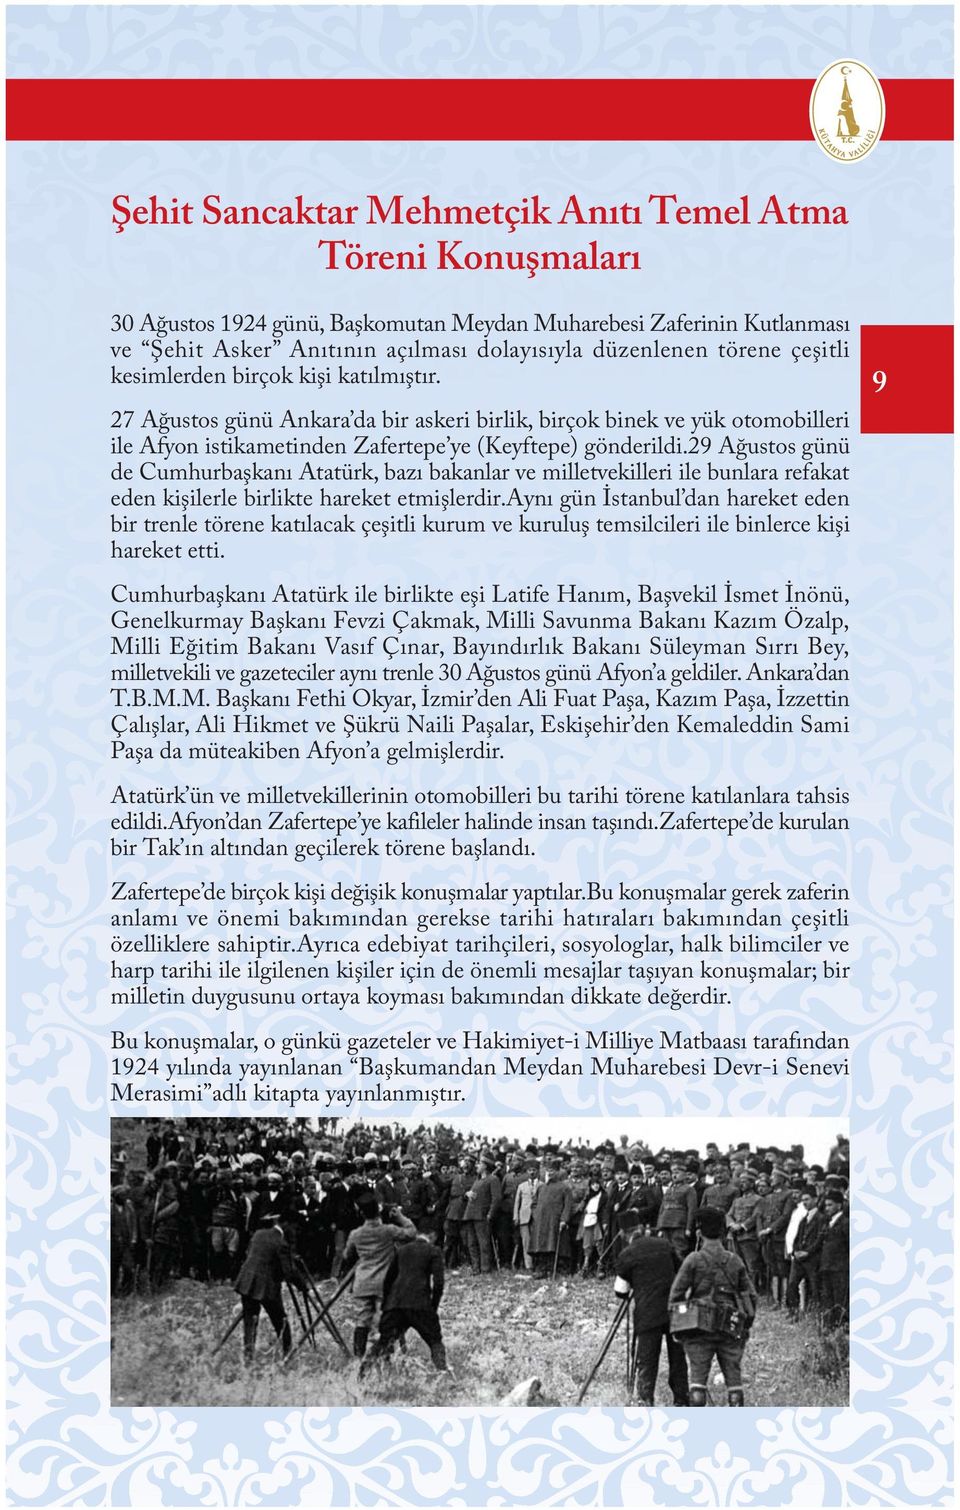 29 Aðustos günü de Cumhurbaþkaný Atatürk, bazý bakanlar ve milletvekilleri ile bunlara refakat eden kiþilerle birlikte hareket etmiþlerdir.